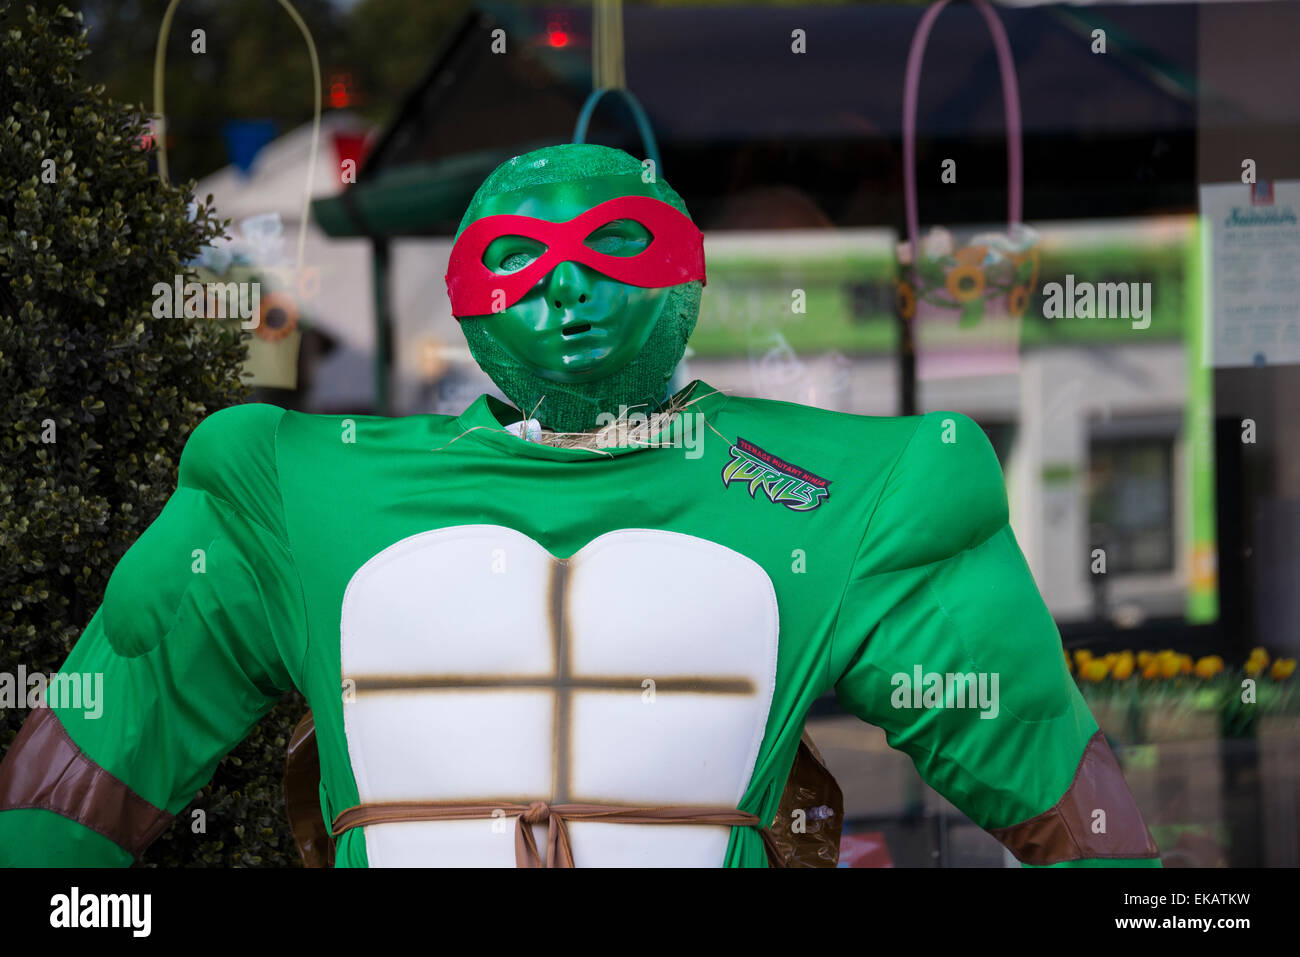 Vogelscheuche Scarecrow Festival. Bunt gekleidete Vogelscheuche mit grünen Kostüm und rote Maske. Stockfoto